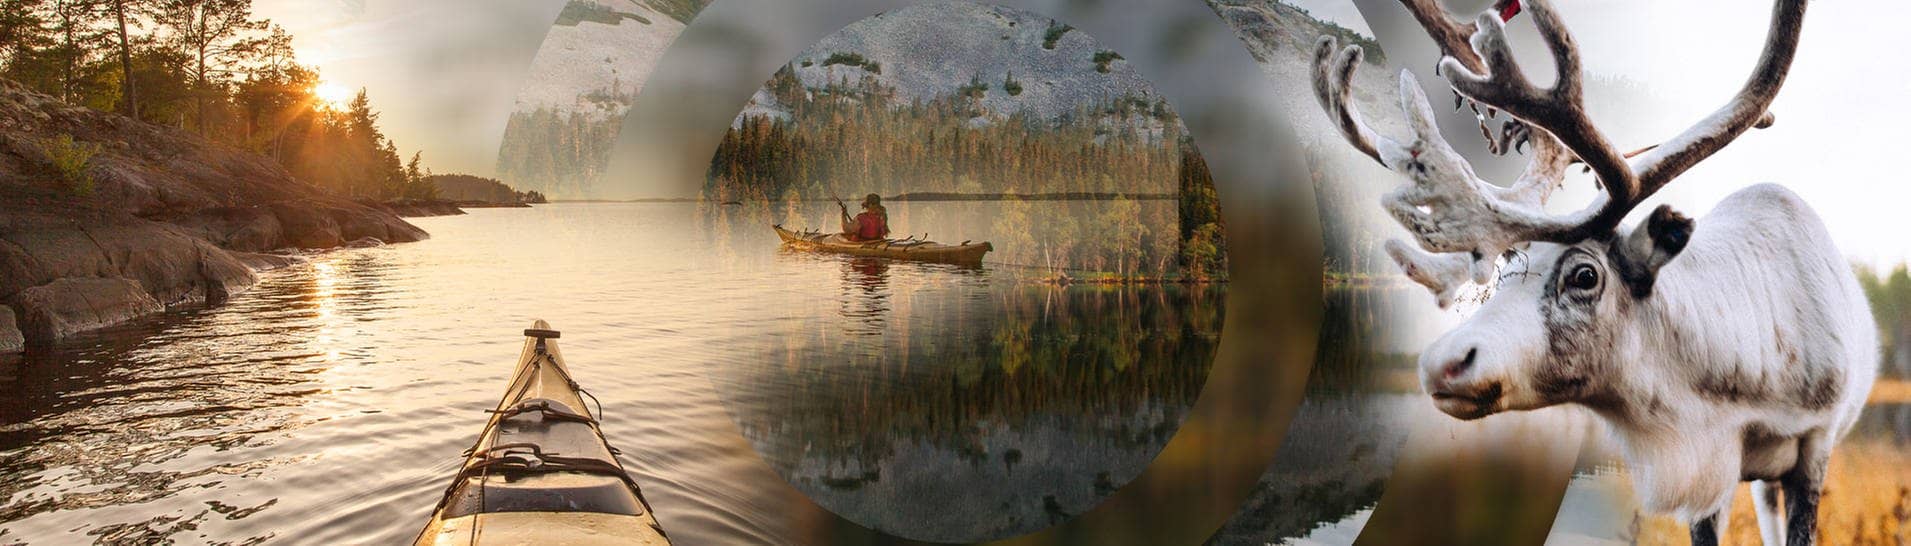 Ein Rentier und ein Kanu auf einem See in Finnland.